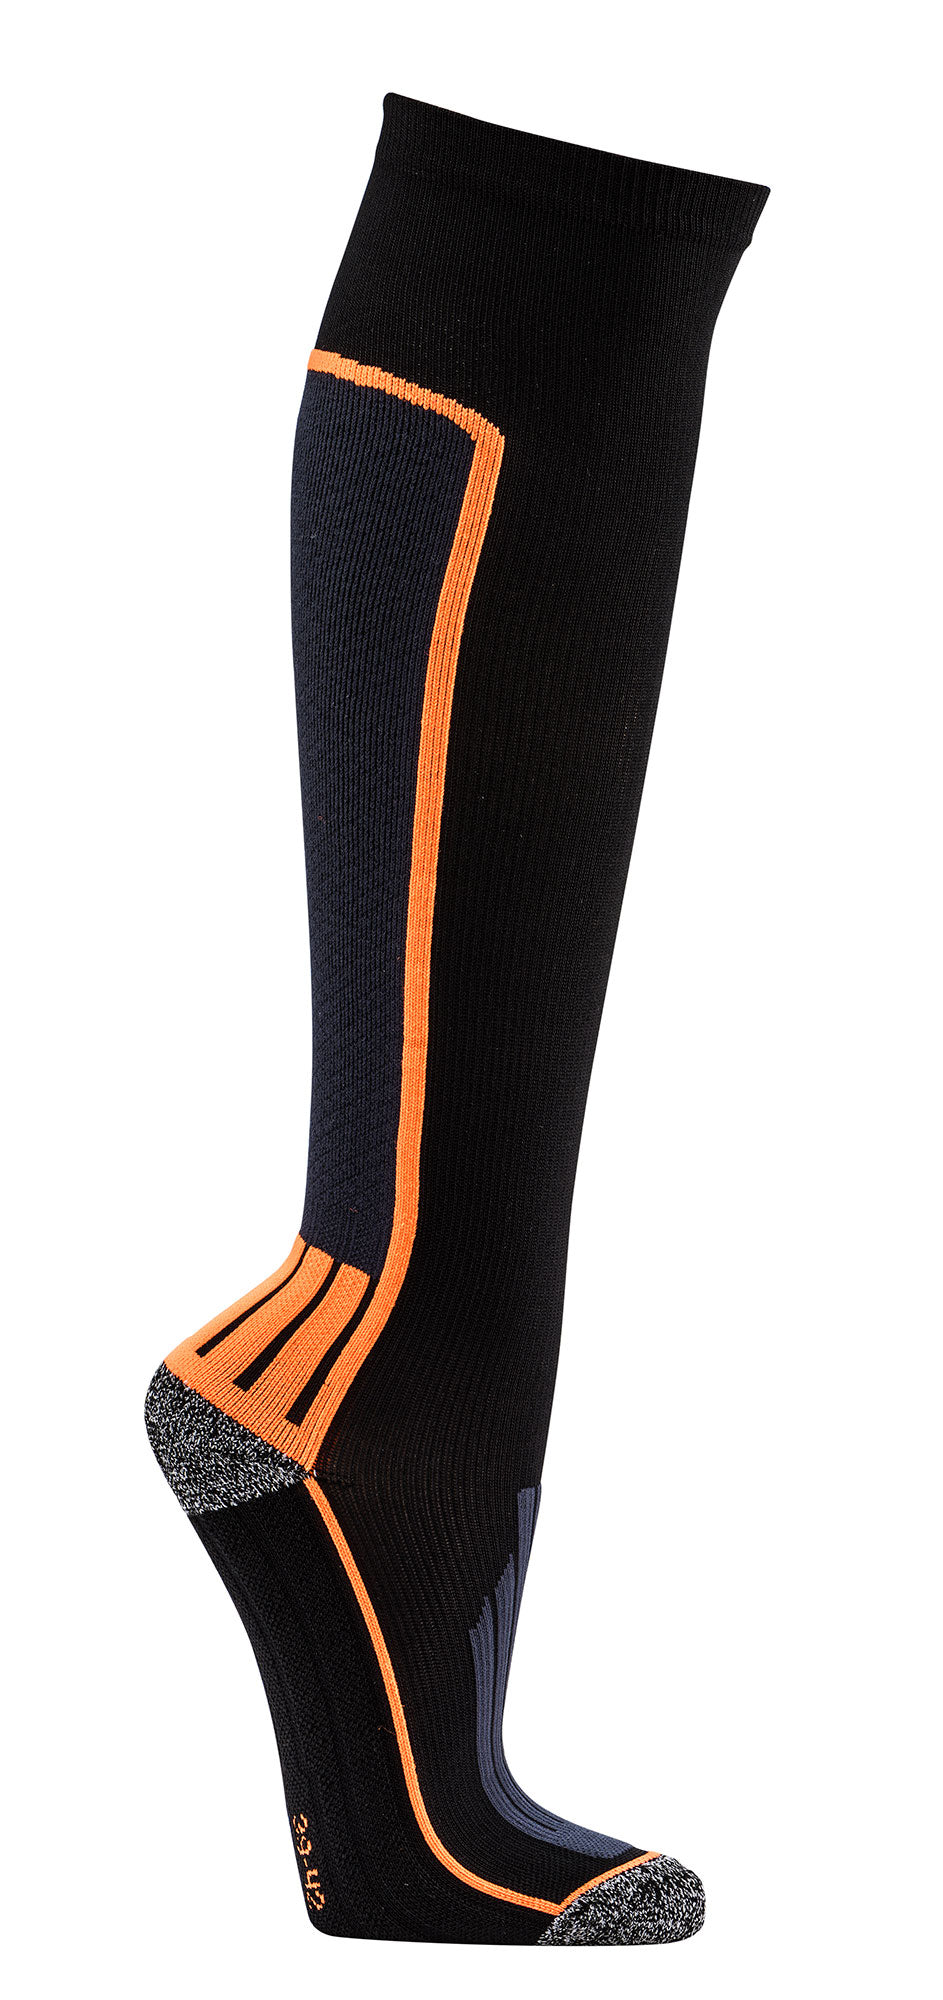 Coolmax® sports compression socks compression stockings sports socks 12 mmHG WO